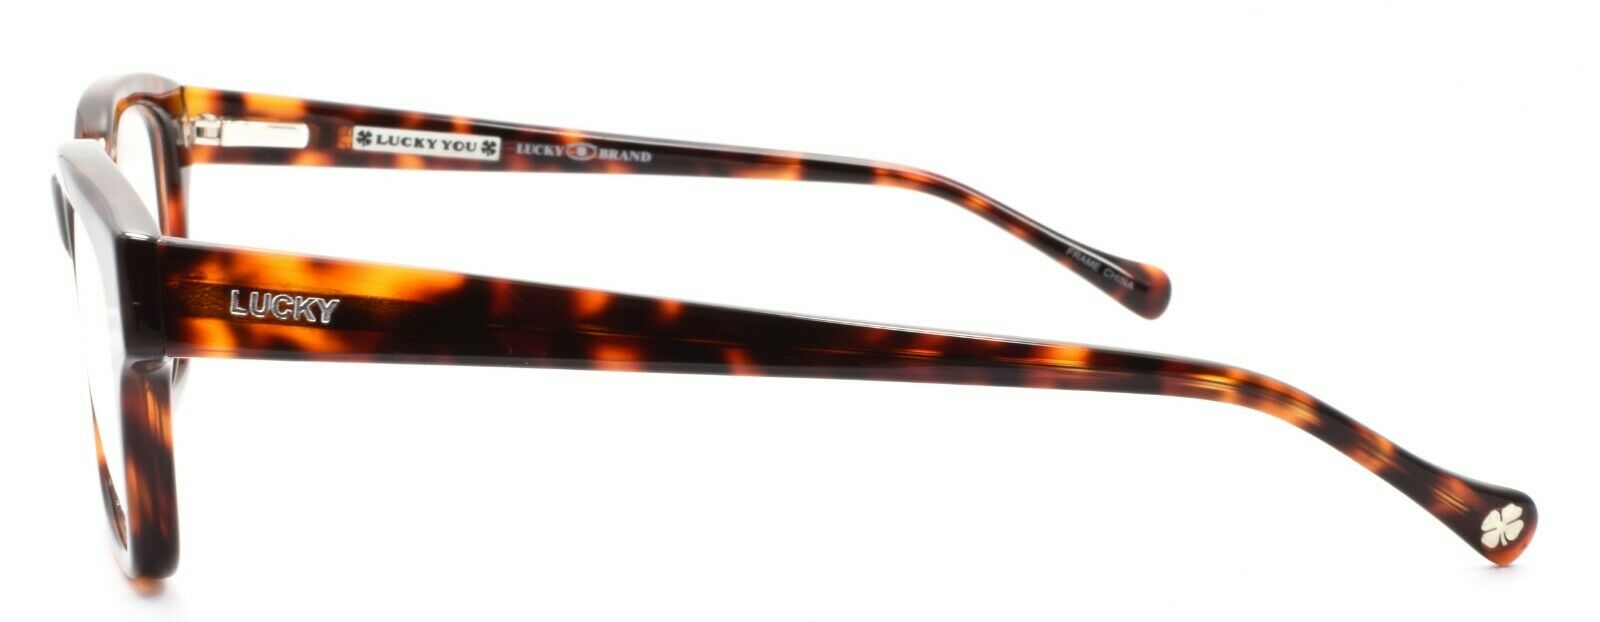 3-LUCKY BRAND Venturer UF Men's Eyeglasses Frames 50-19-145 Tortoise + CASE-751286249309-IKSpecs